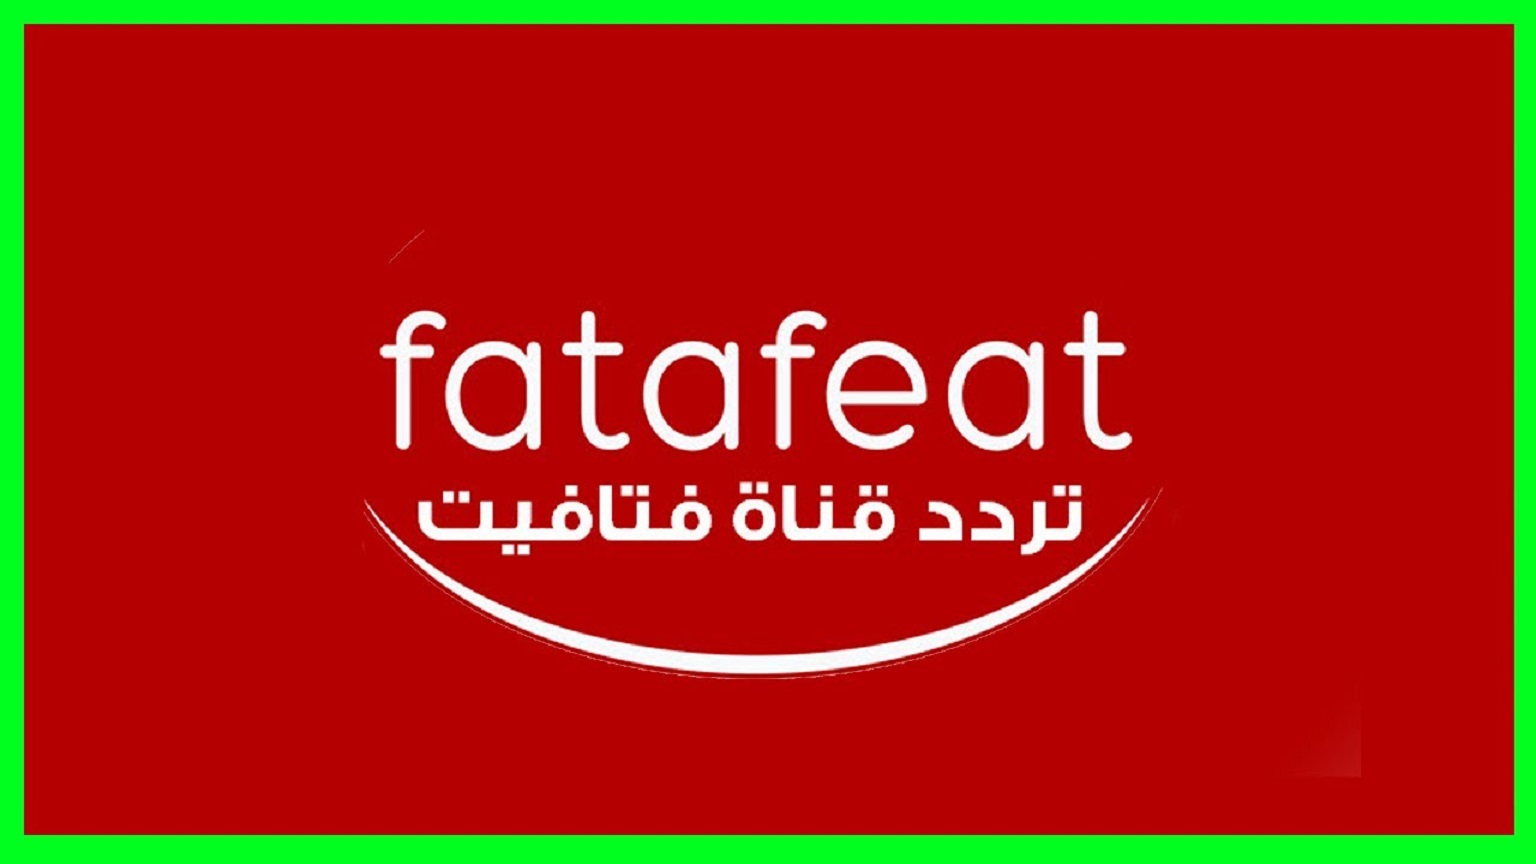 “اضبط الآن” تردد قناة فتافيت 2020 على النايل سات لمتابعة وصفات اعداد الطعام في رمضان